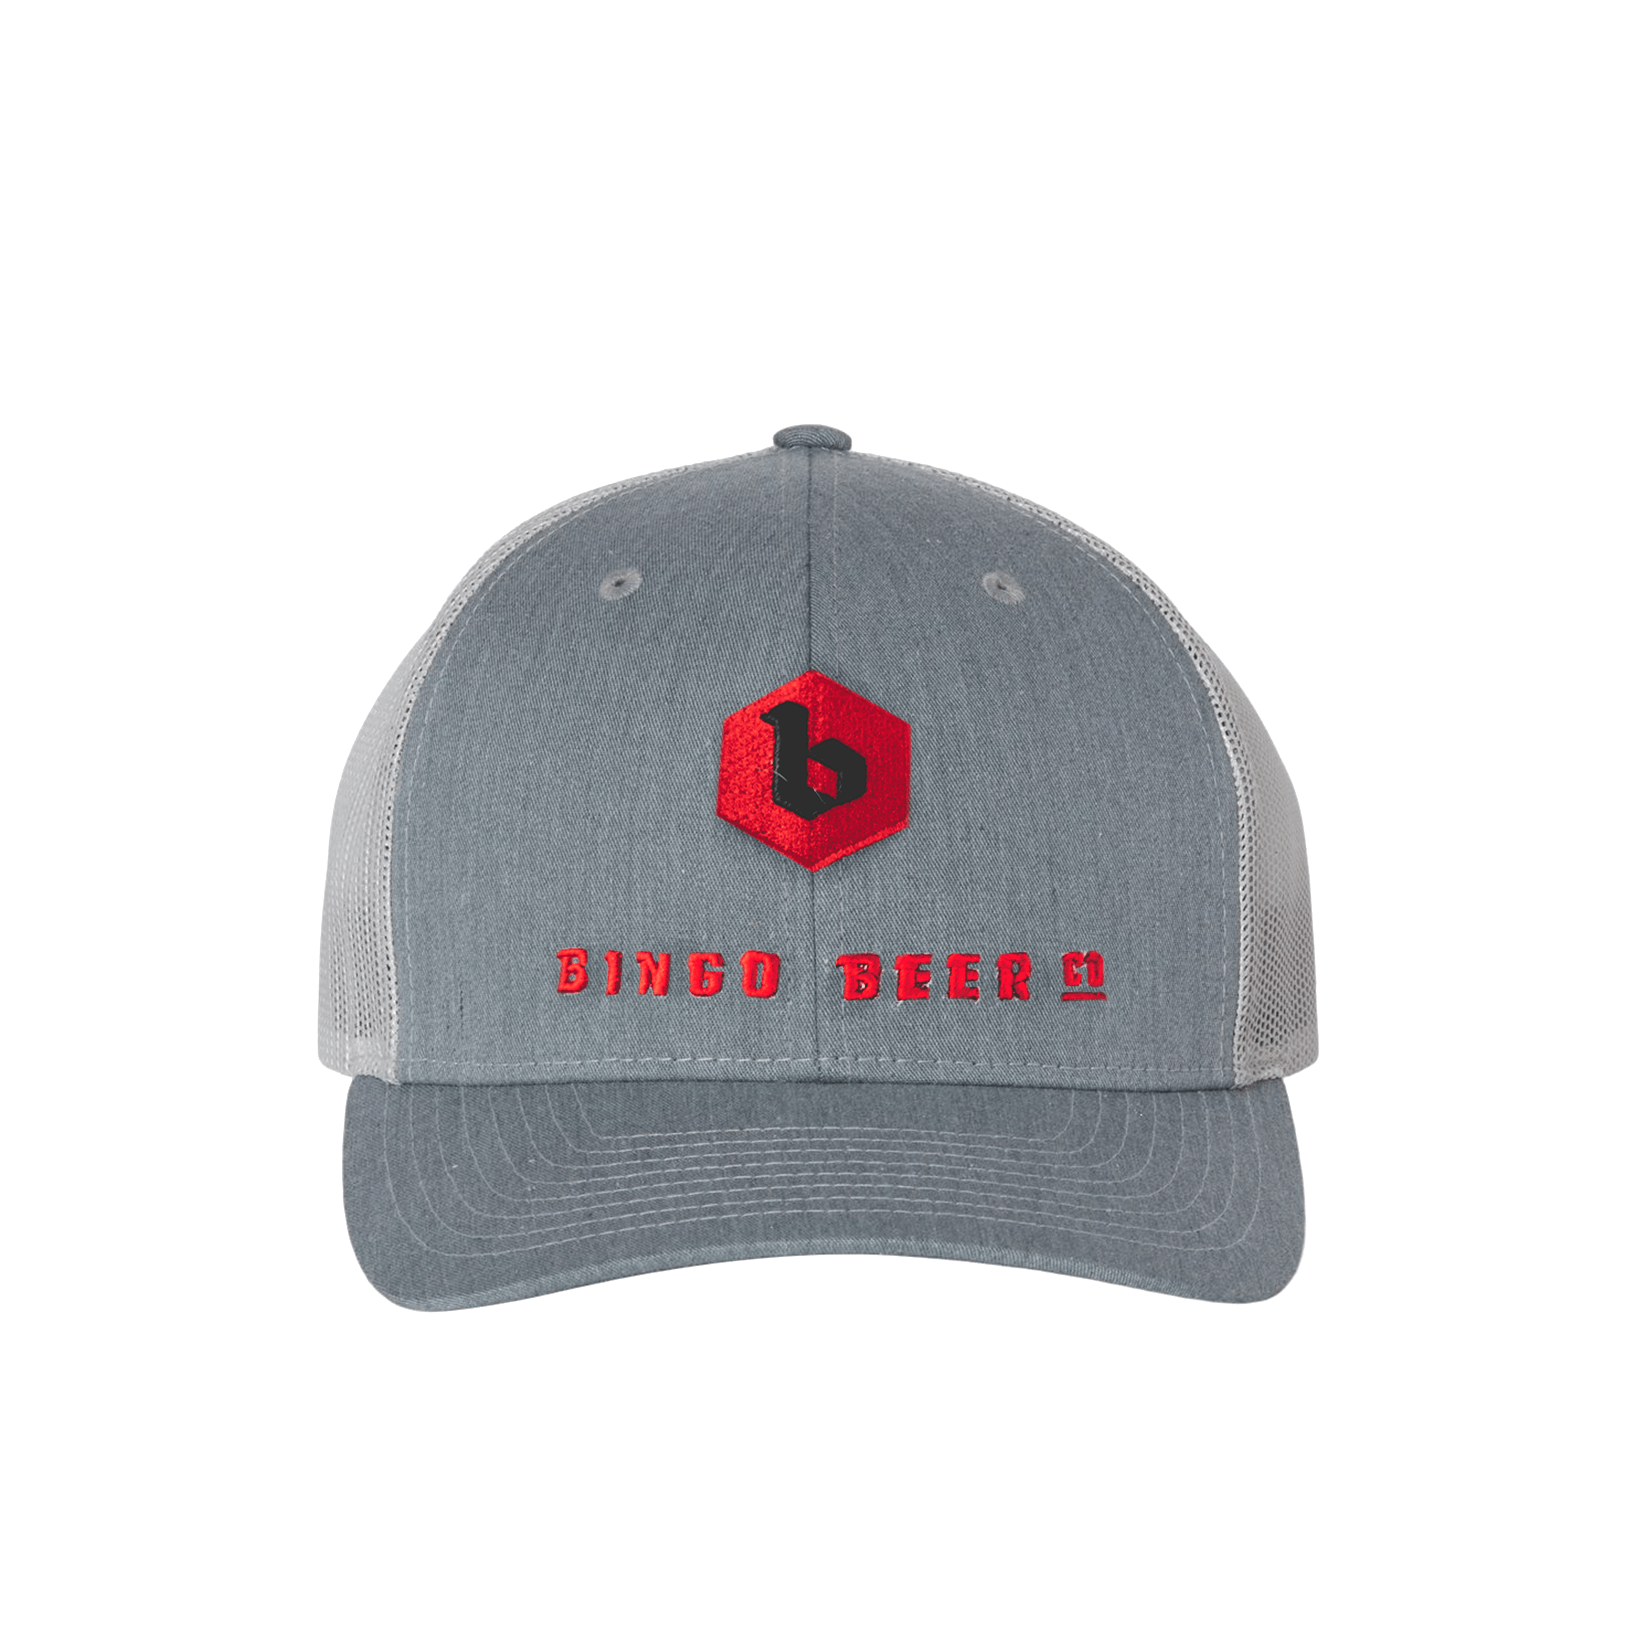 Trucker Hat - Grey/Red/White | Bingo Brewing Online Shop